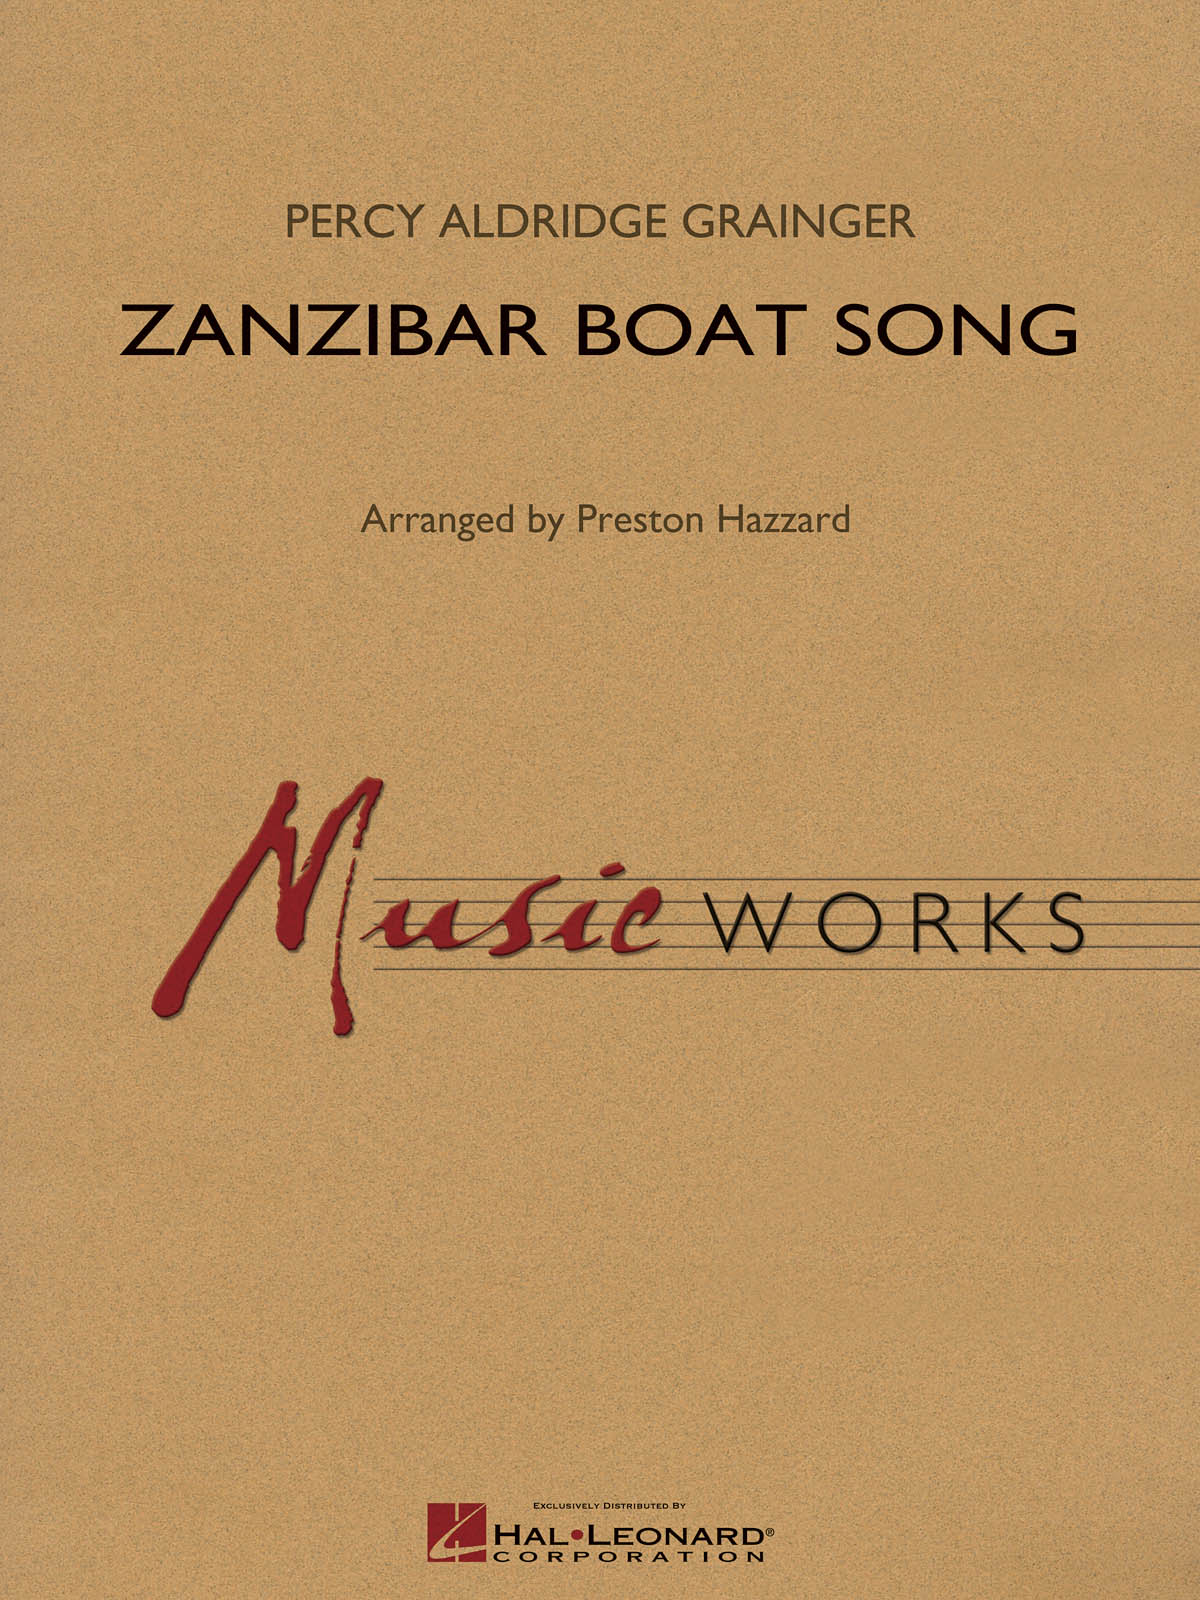 Percy Aldridge Grainger: Zanzibar Boat Song: Concert Band: Score & Parts